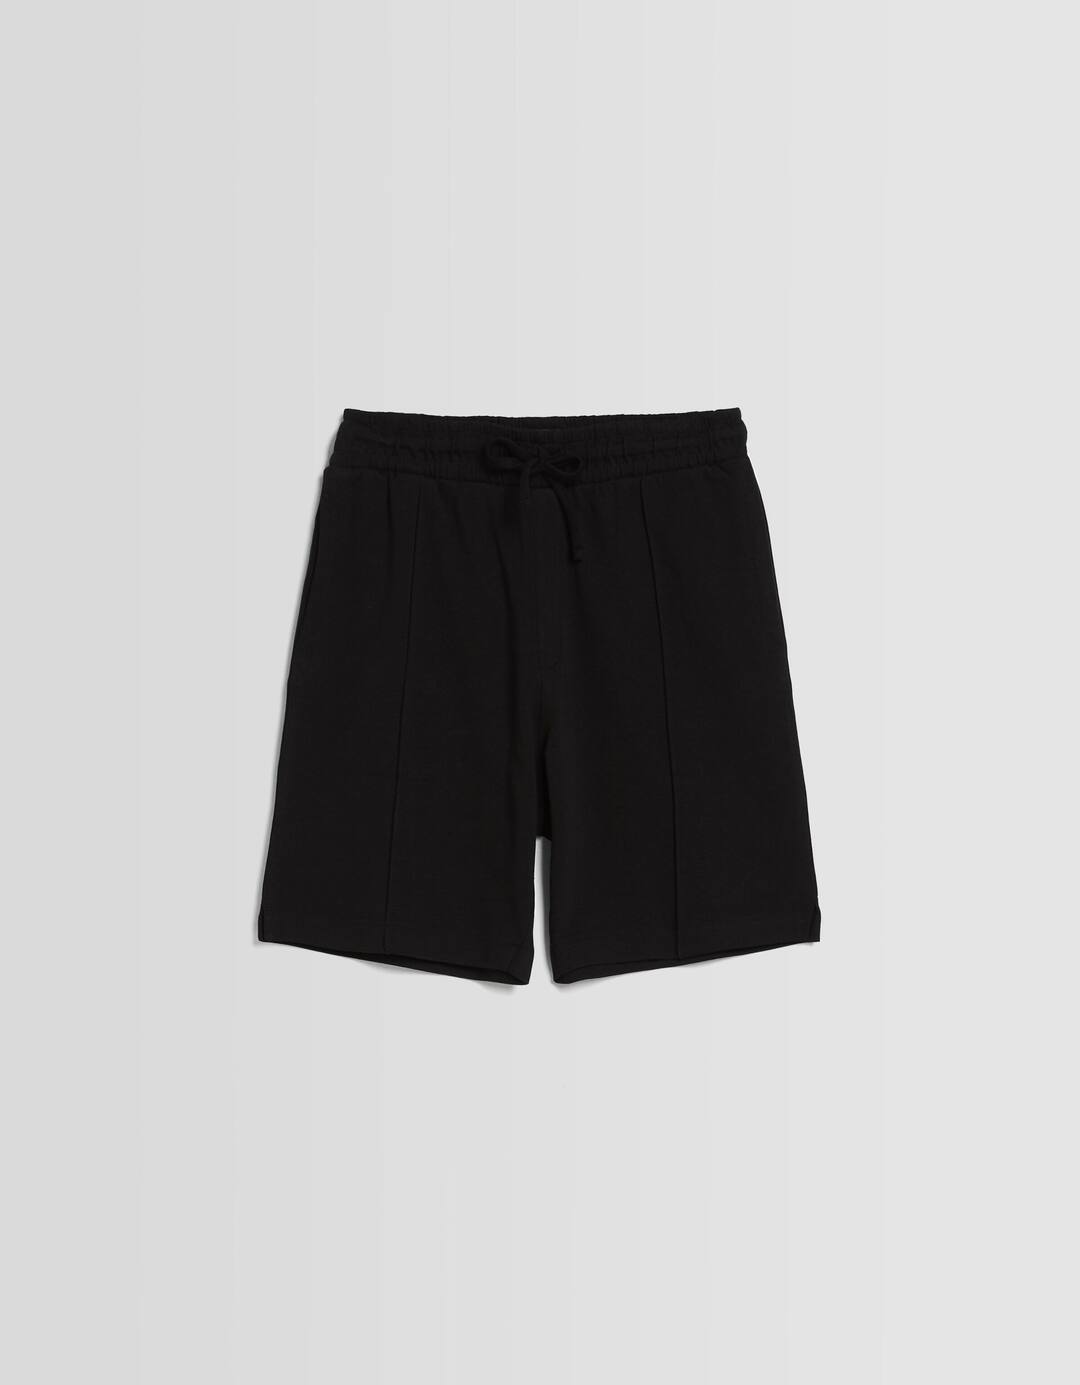 Interlock plush Bermuda shorts